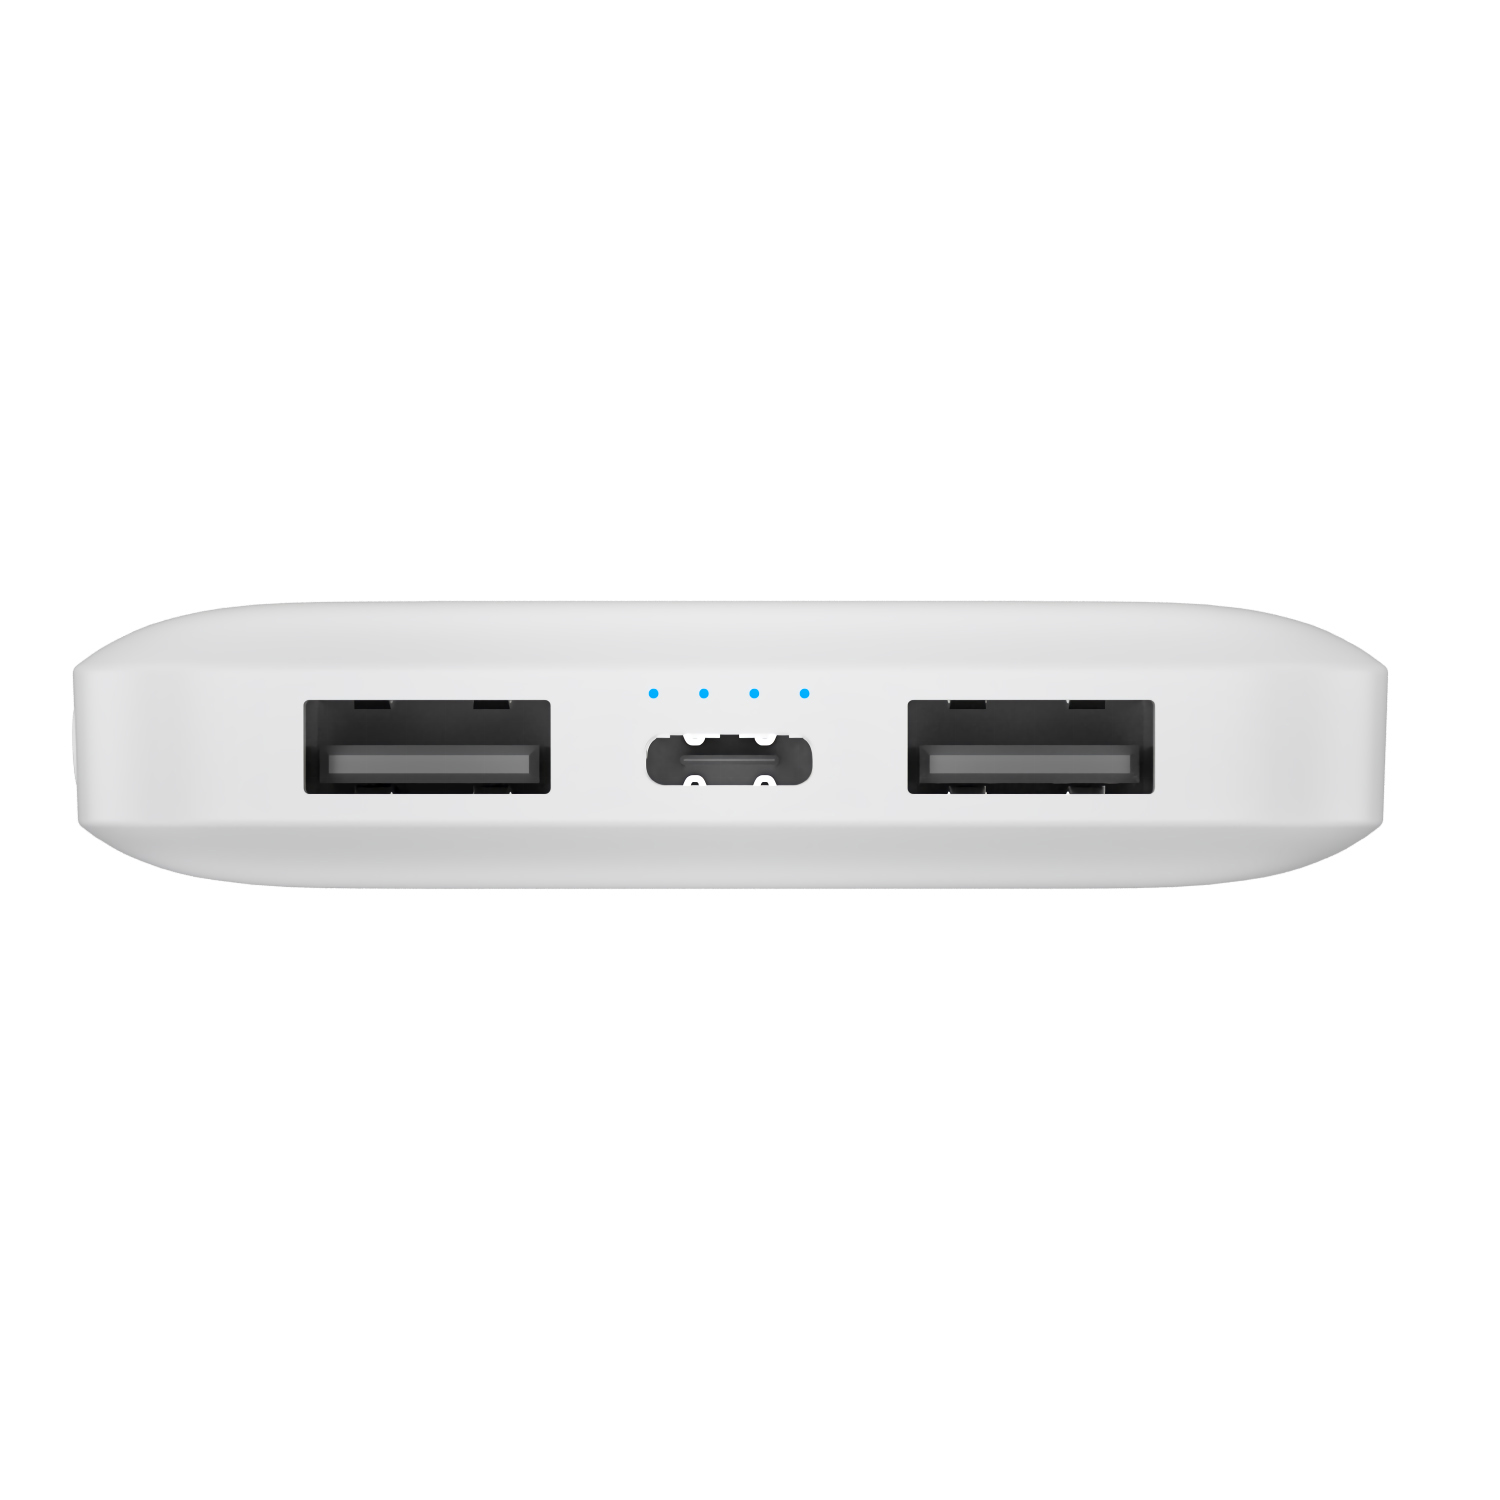 Power Bank 10000 mAh con 2 porte USB colore bianco